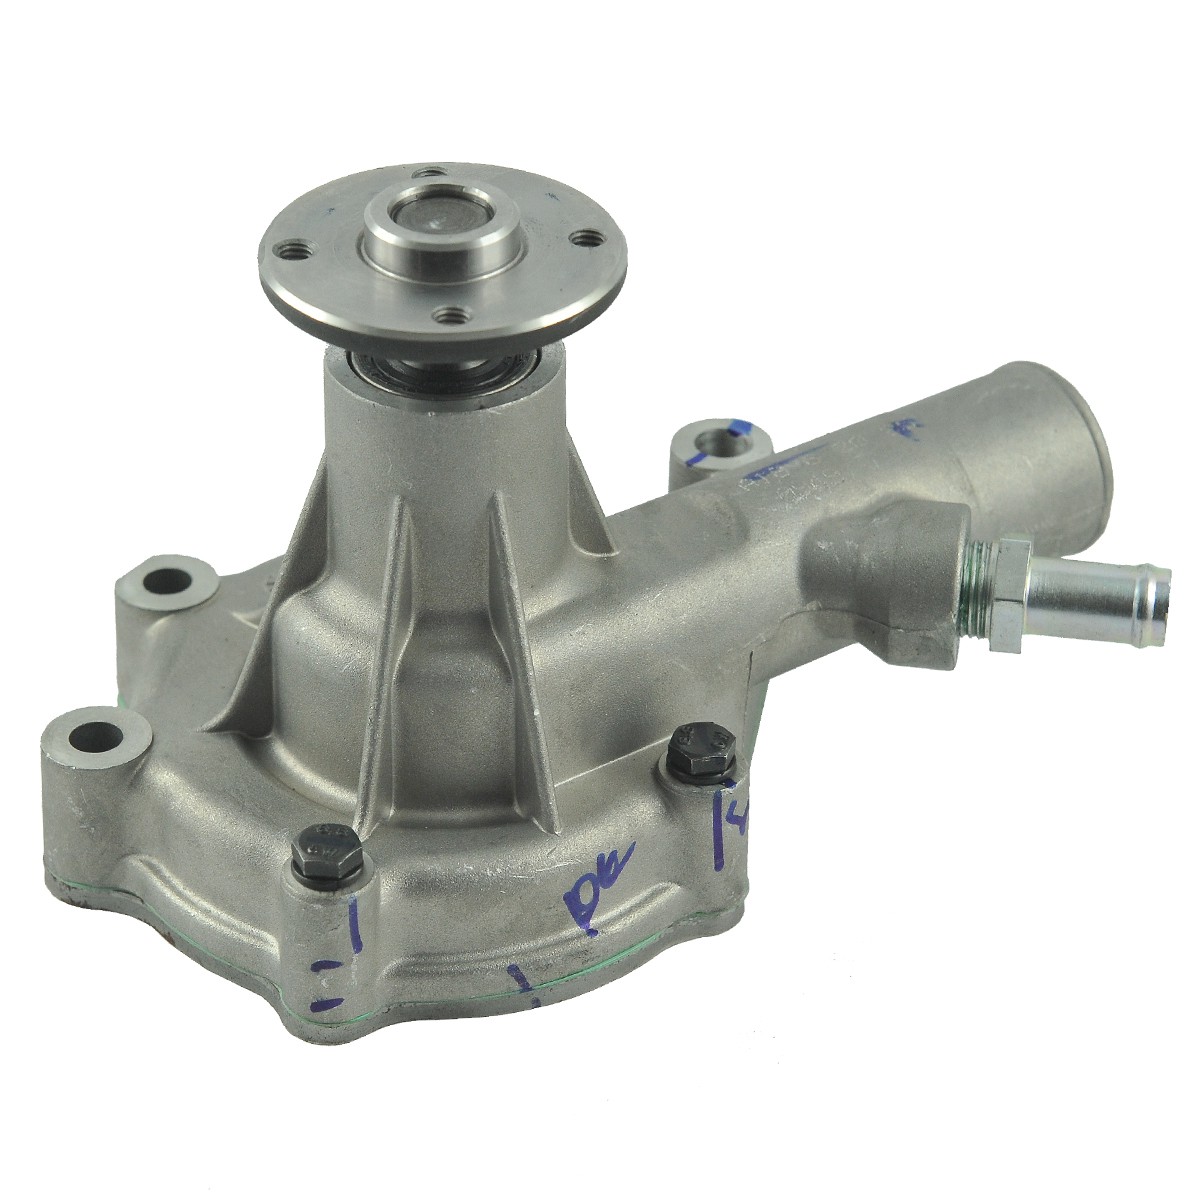 Water pump / Mitsubishi S3L2 / Startrac 263 / Startrac 273 / 39205368